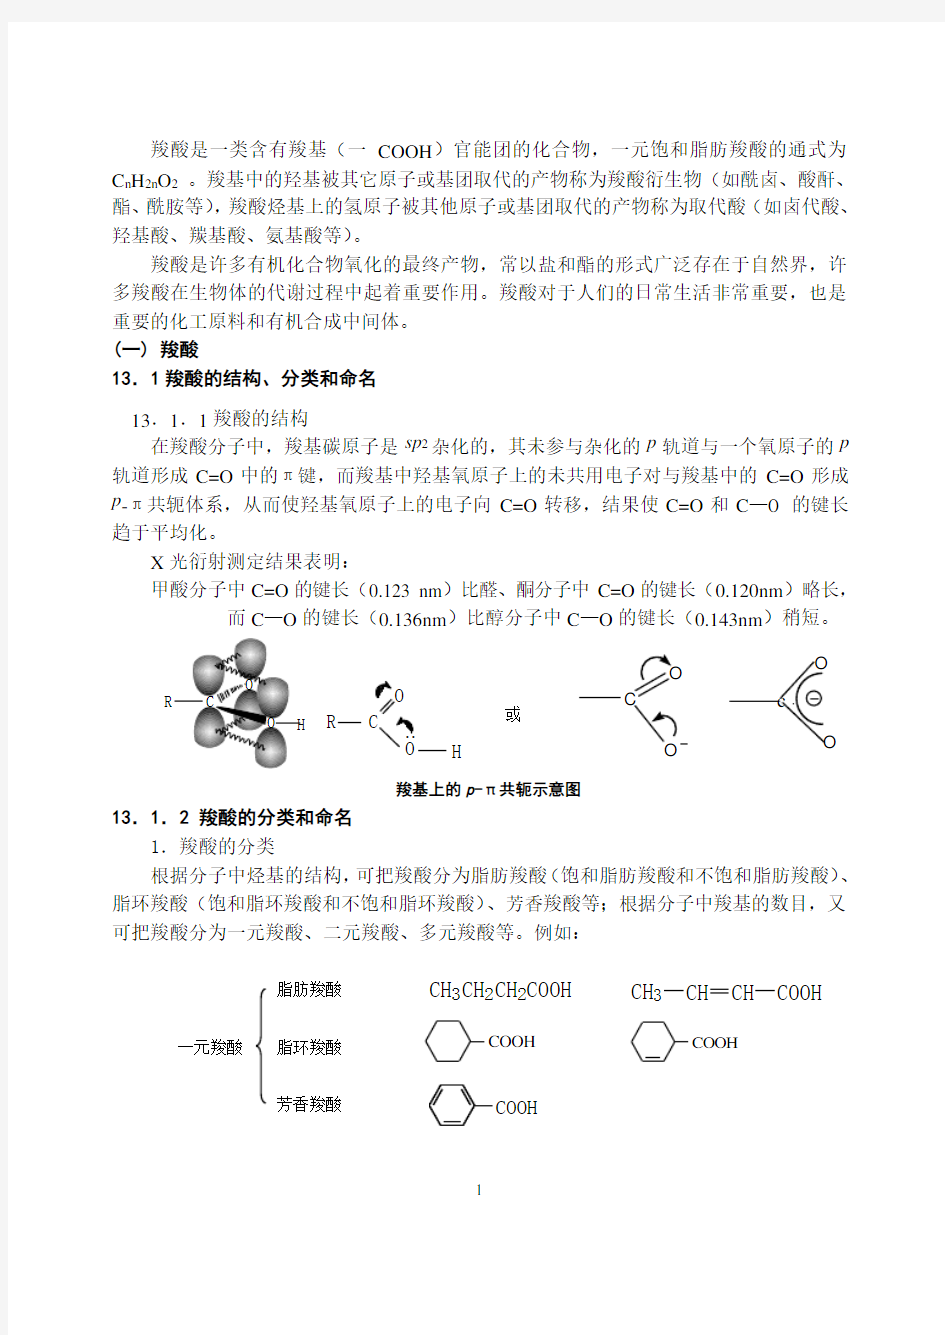 第十三章 羧酸及其衍生物